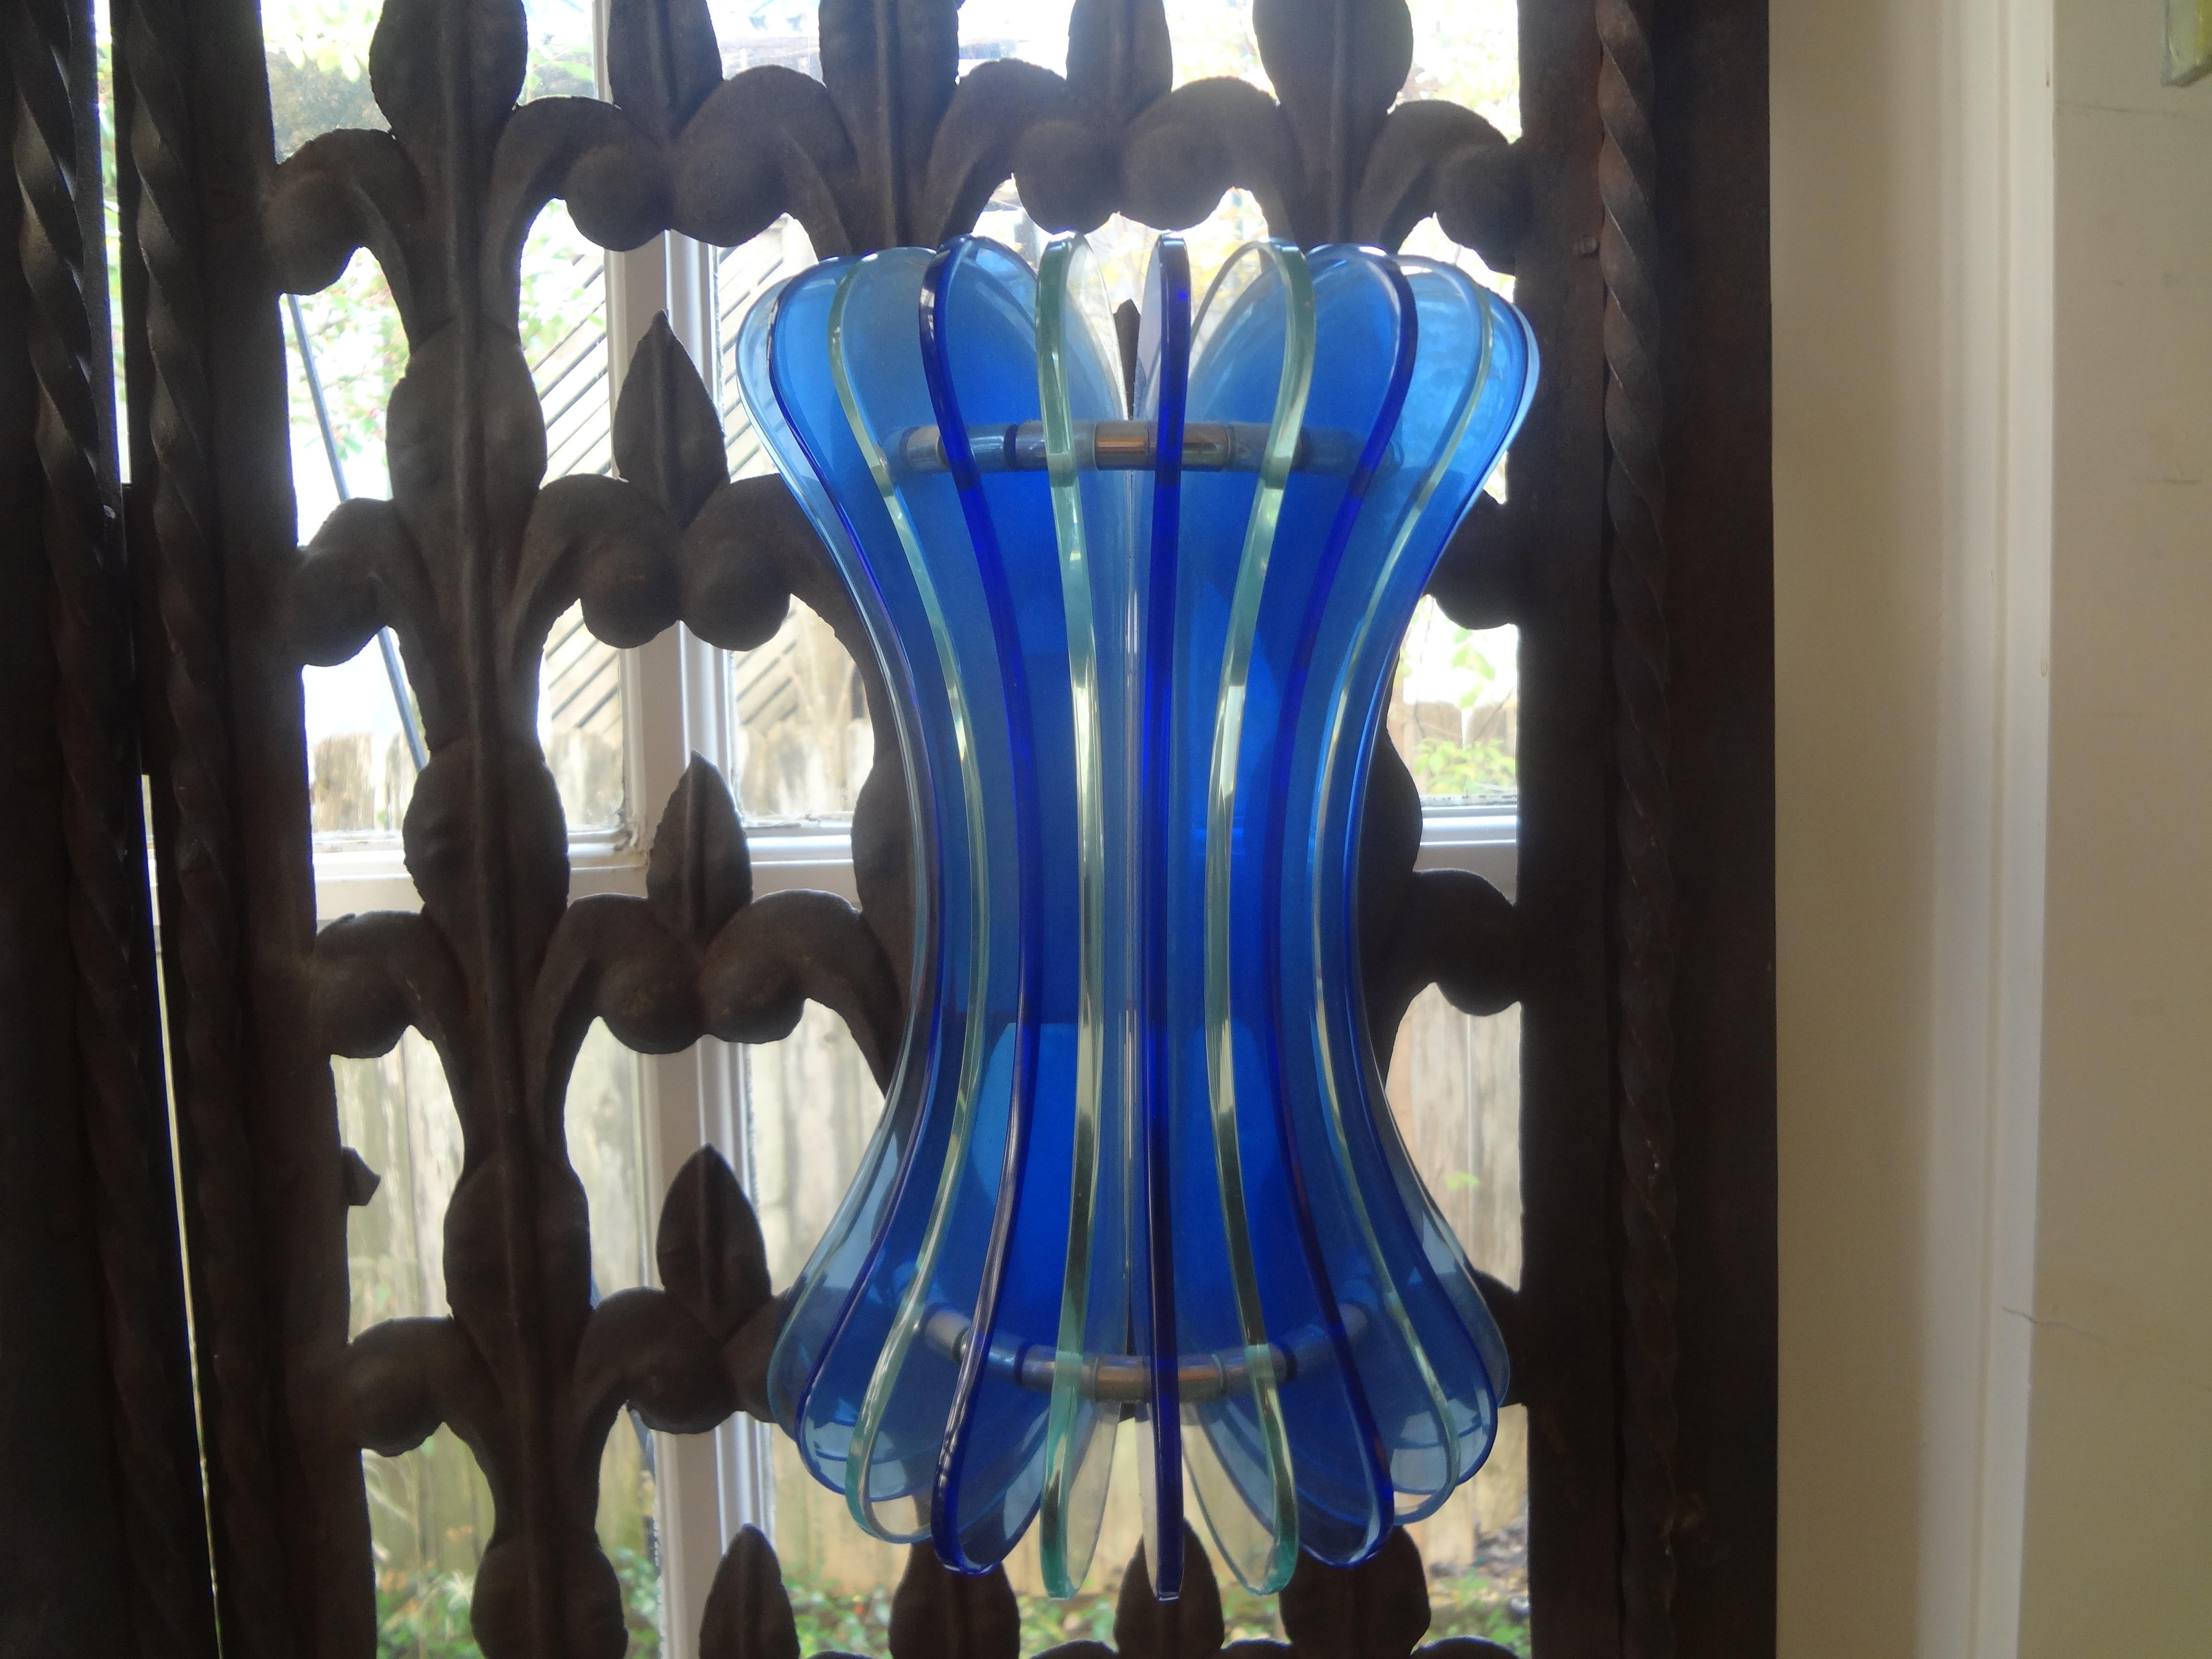 Paire d'appliques en verre bleu de Murano par Veca.
Cette superbe paire d'appliques italiennes présente une alternance de panneaux en verre bleu et transparent montés sur des cadres en acier chromé.
Chaque applique a été recâblée avec deux nouvelles